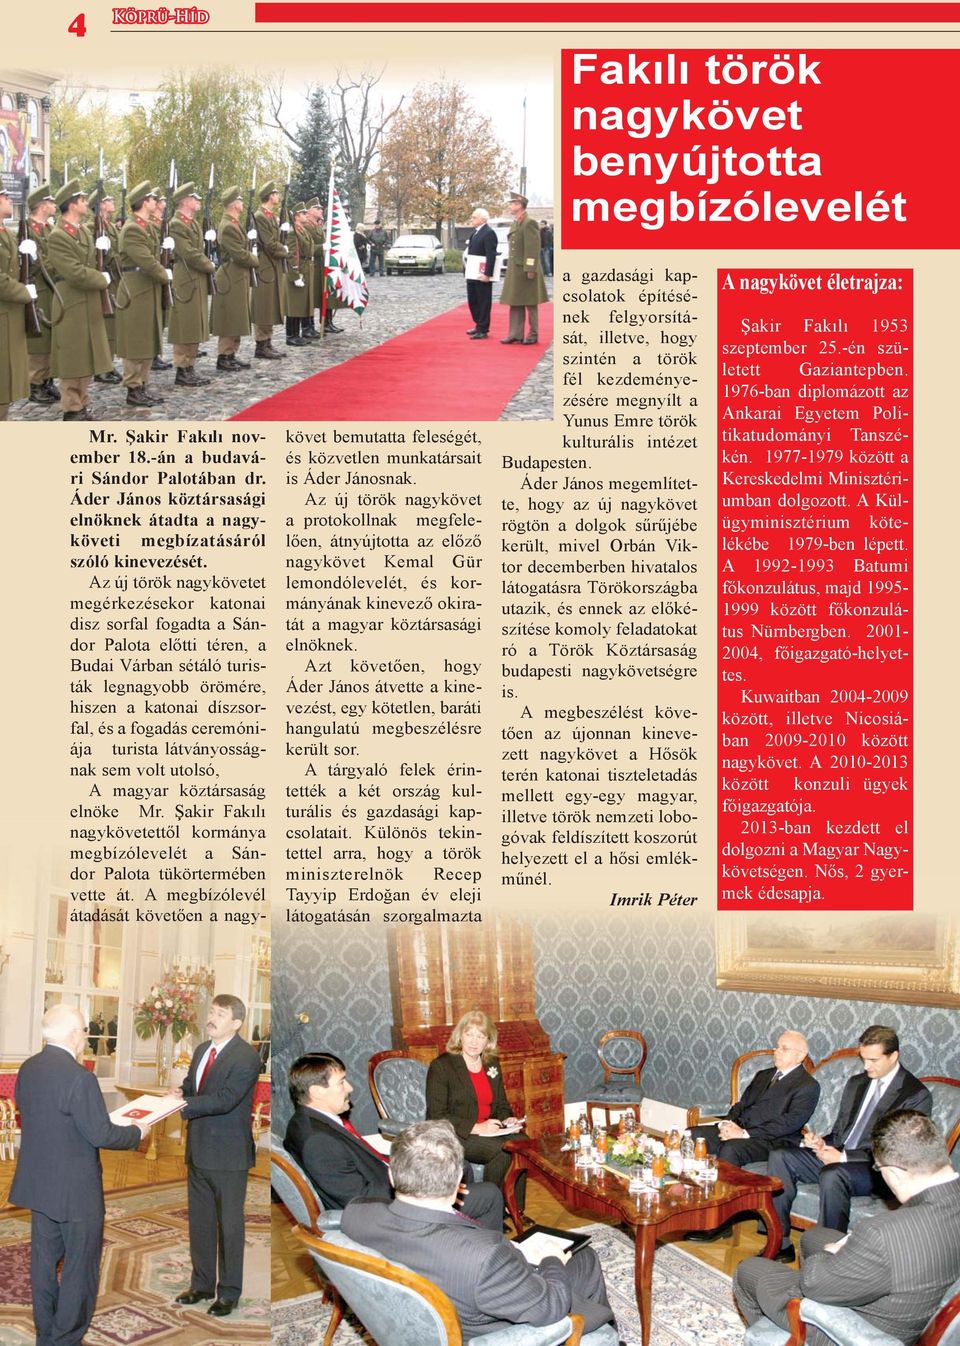 Az új török nagykövetet megérkezésekor katonai disz sorfal fogadta a Sándor Palota előtti téren, a Budai Várban sétáló turisták legnagyobb örömére, hiszen a katonai díszsorfal, és a fogadás